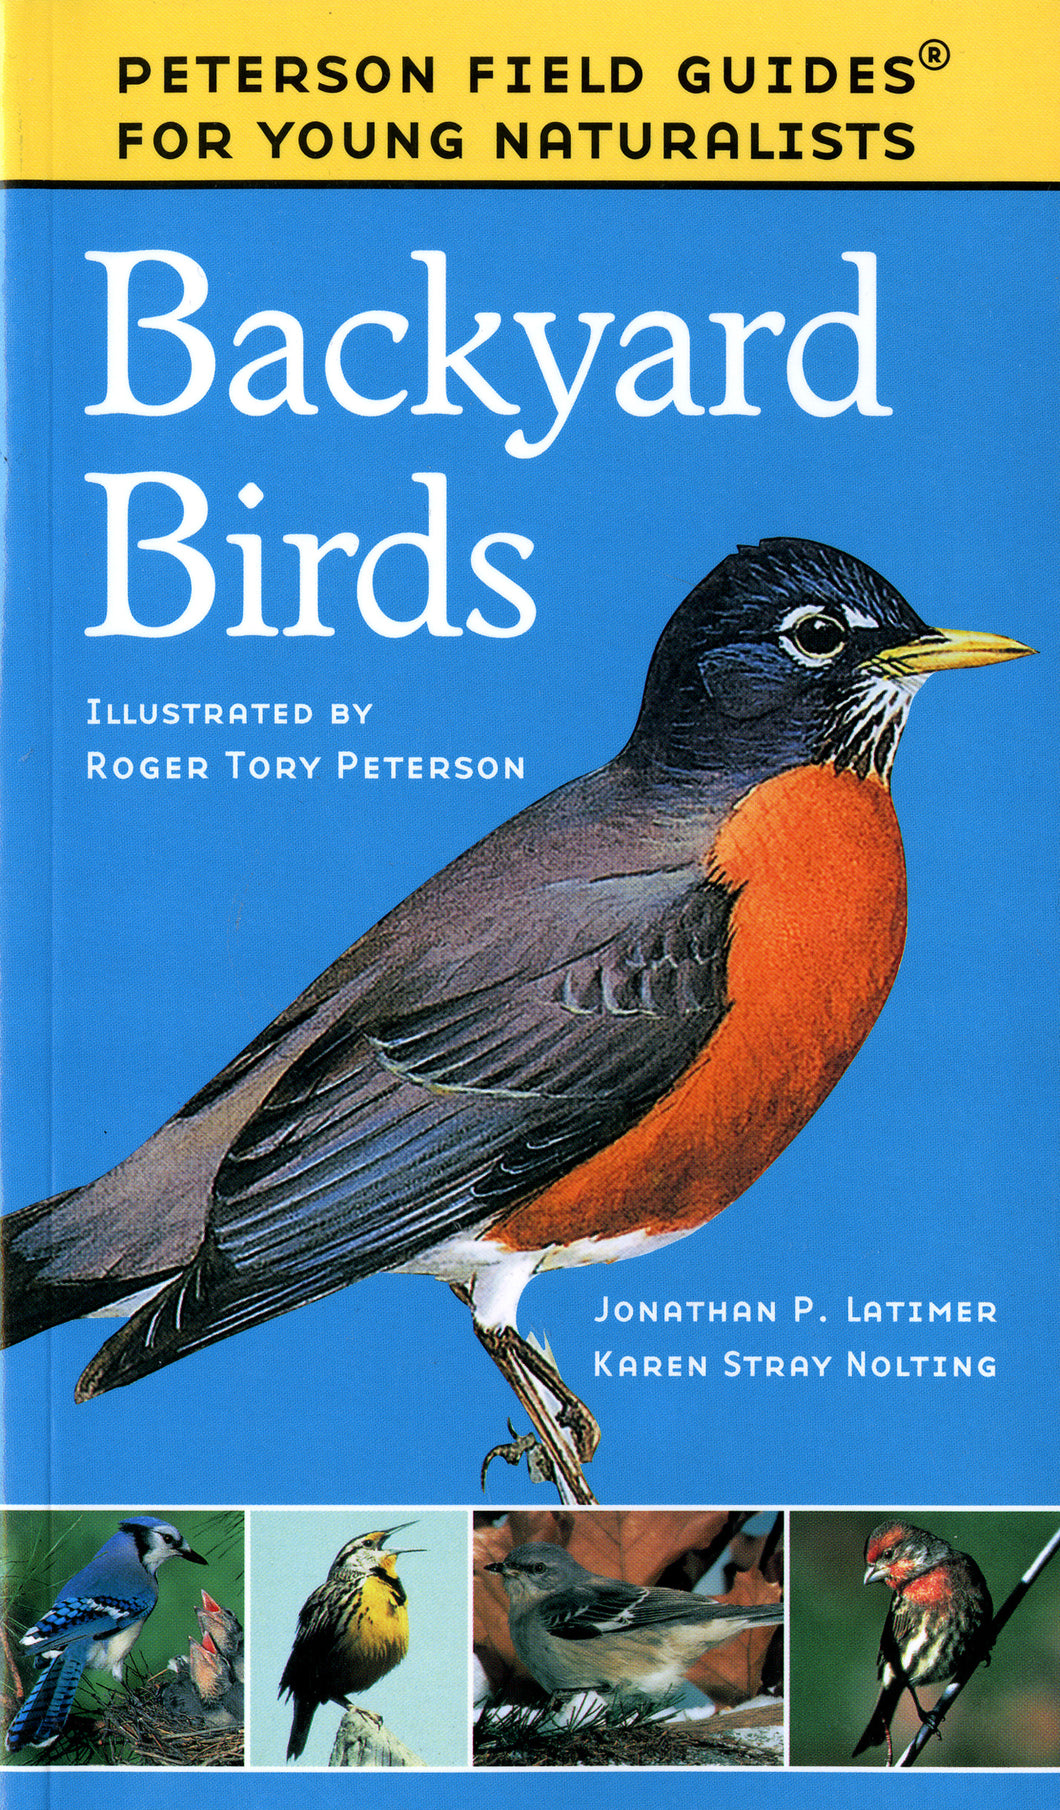 Backyard Birds